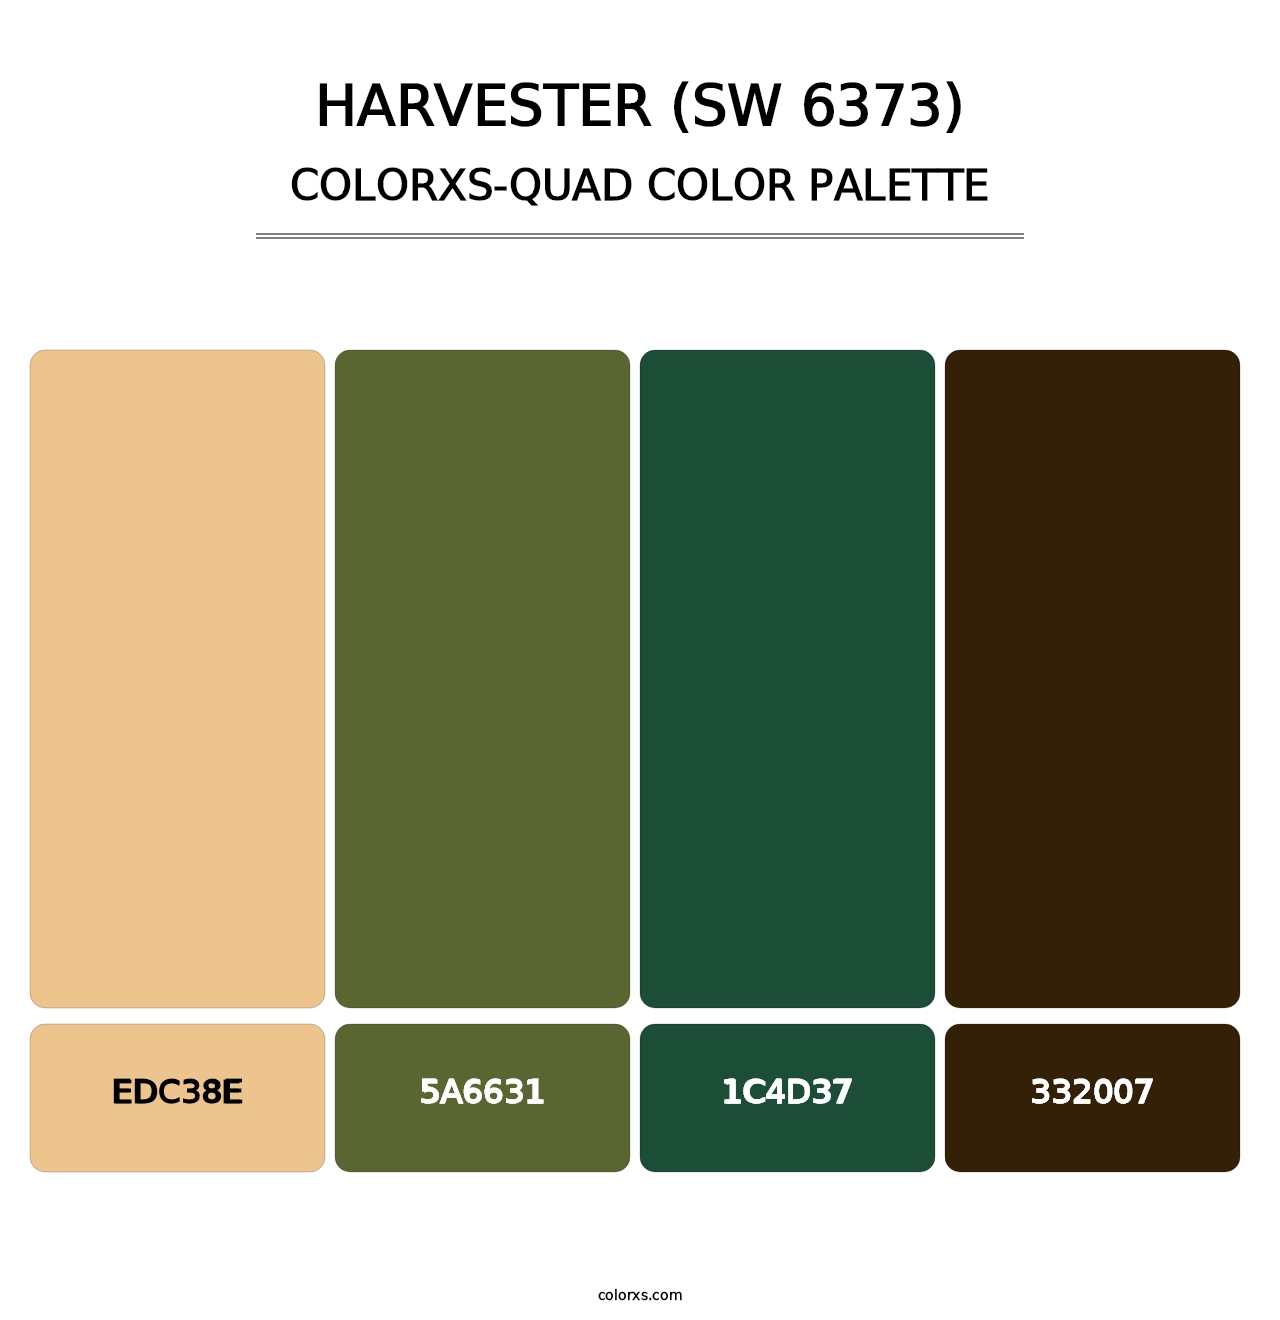 Harvester (SW 6373) - Colorxs Quad Palette